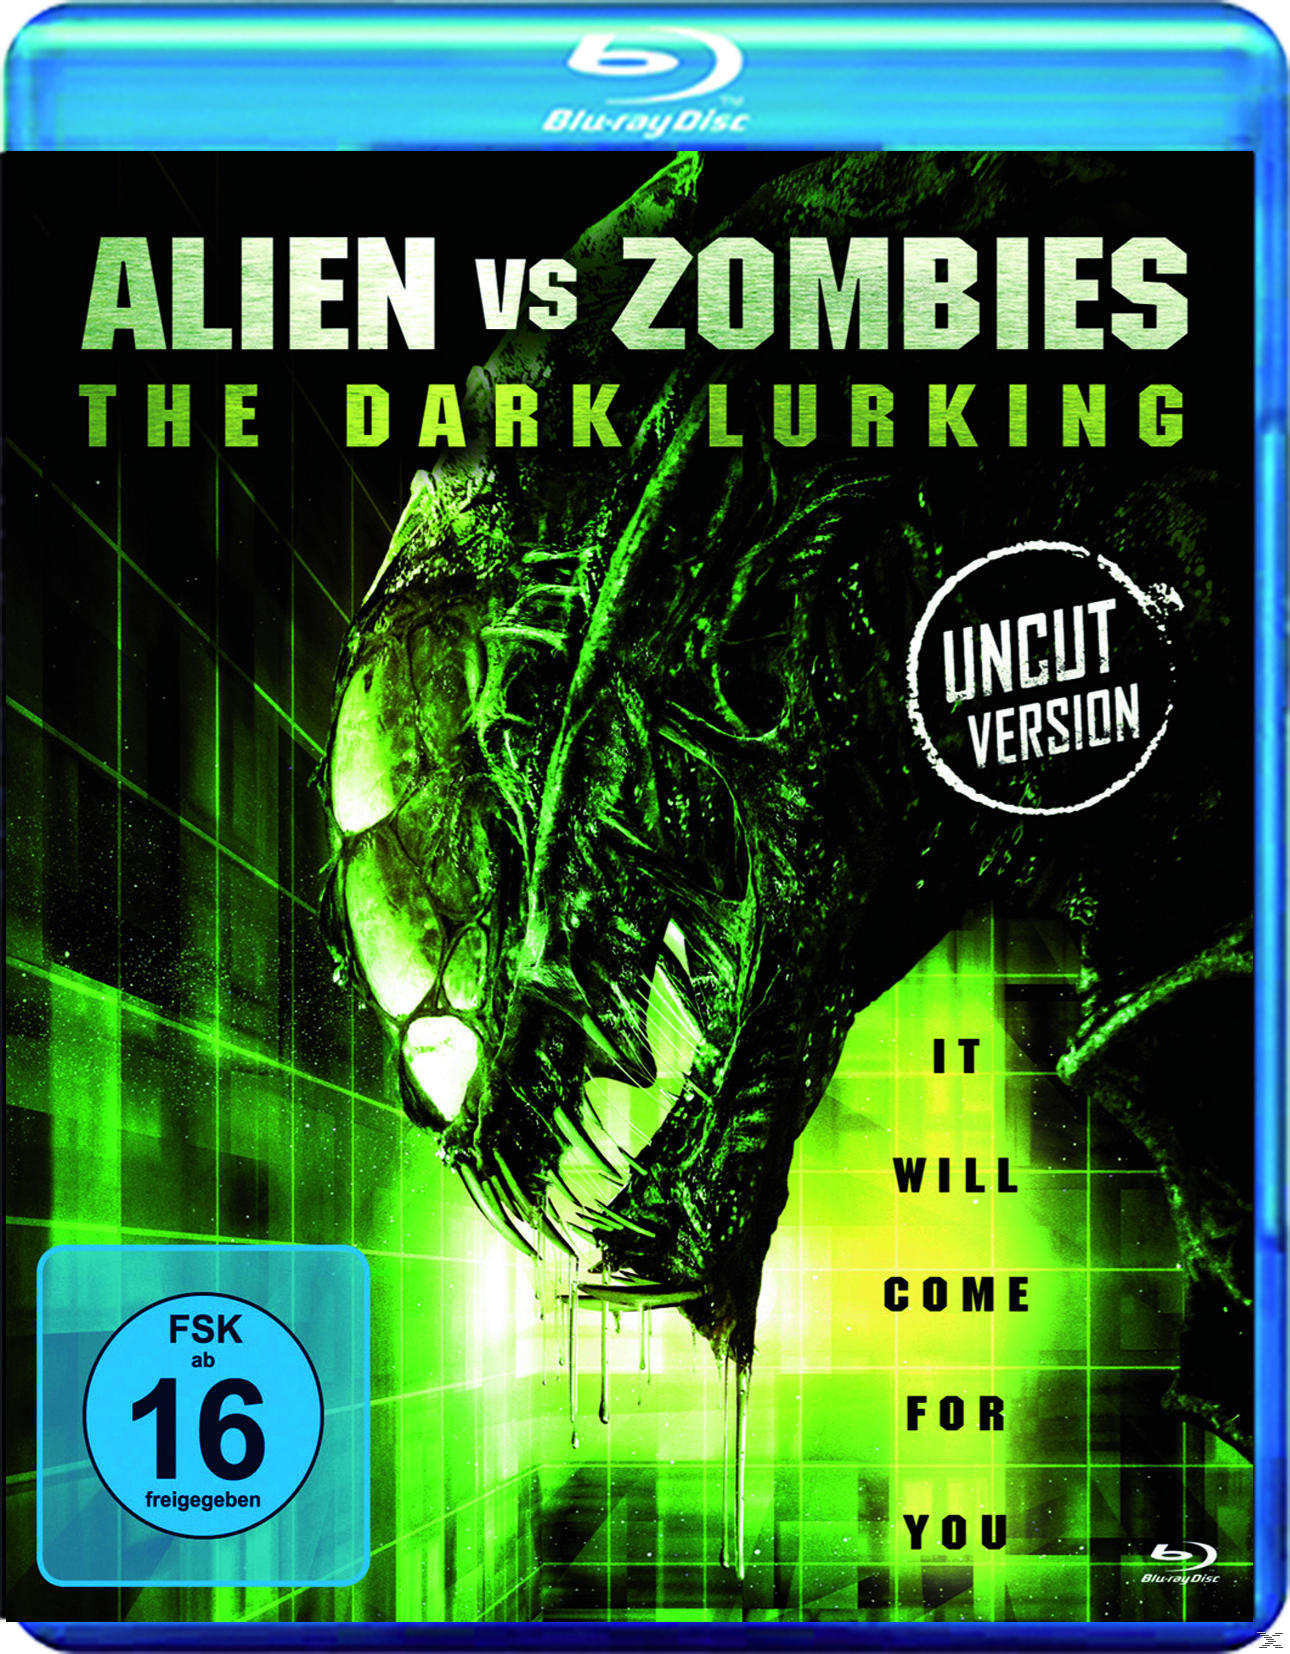 Blu-ray Alien vs Zombies